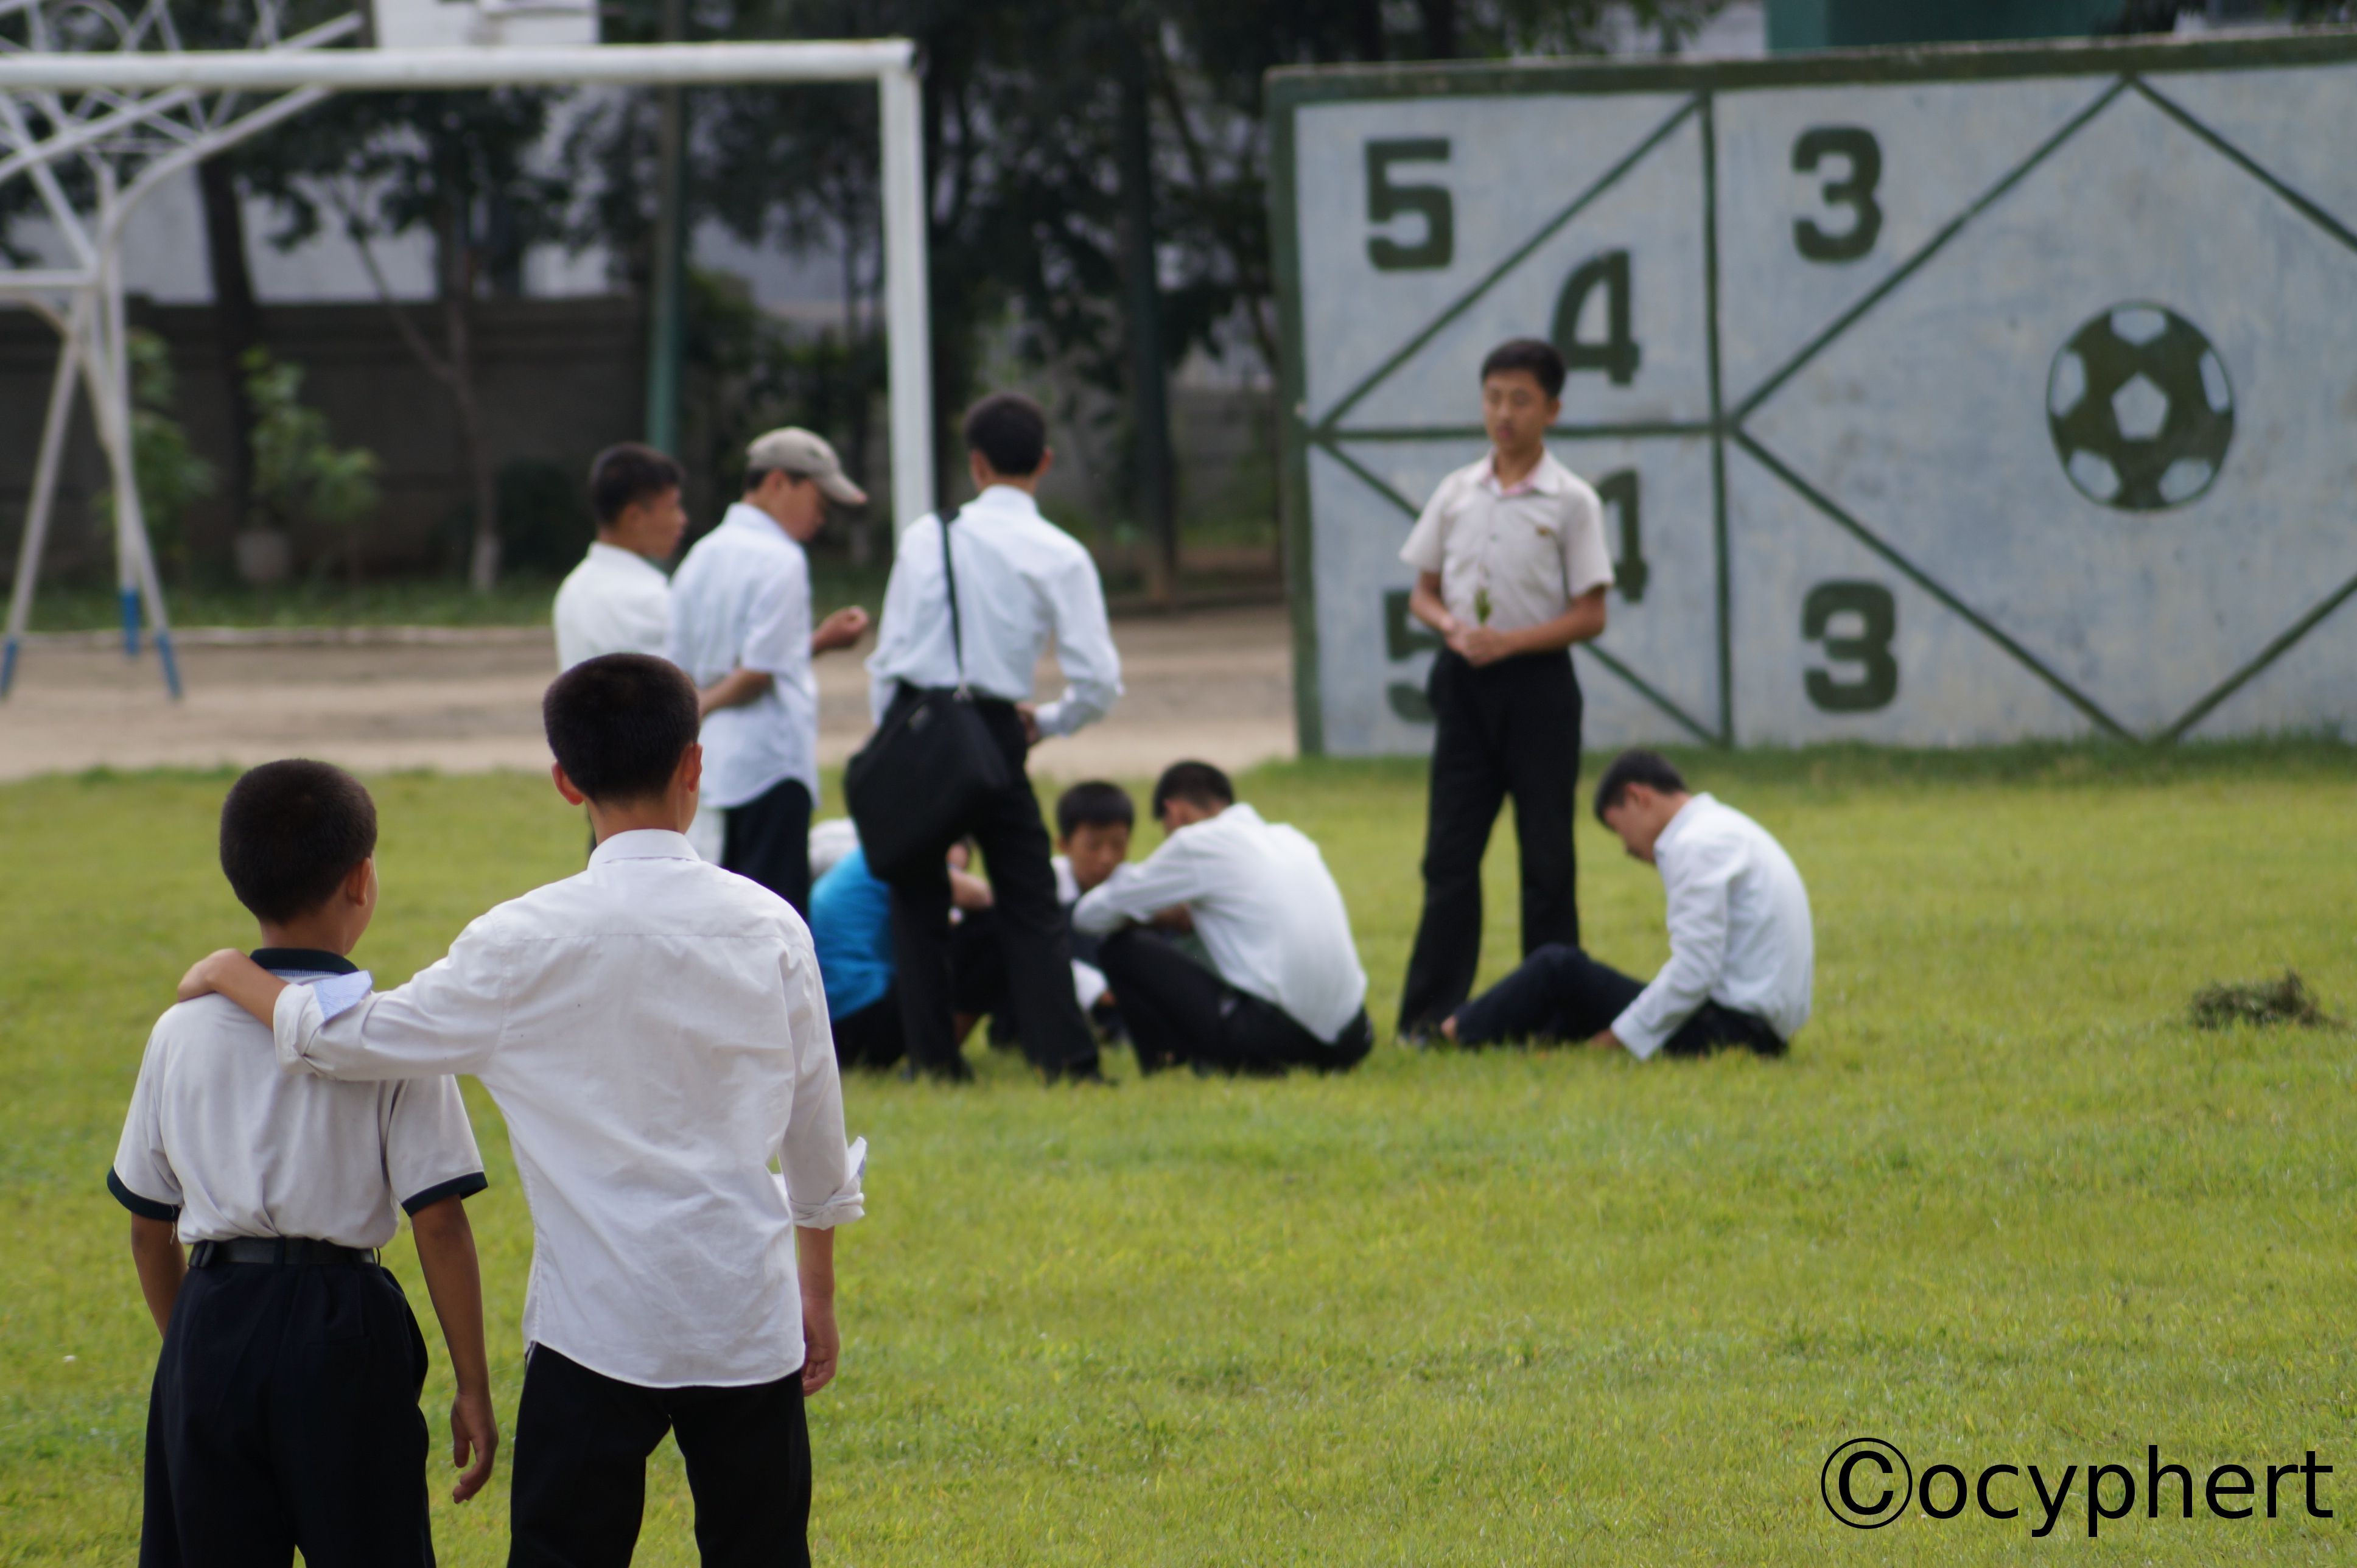 Eine Gruppe Kinder sitzt auf dem Rasen des Pausenhofes. Im Hintergrund sieht man ein Fußballtor, im Vordergrund einen Jungen, der einem etwas kleineren Jungen die Hand auf die Schulter legt.